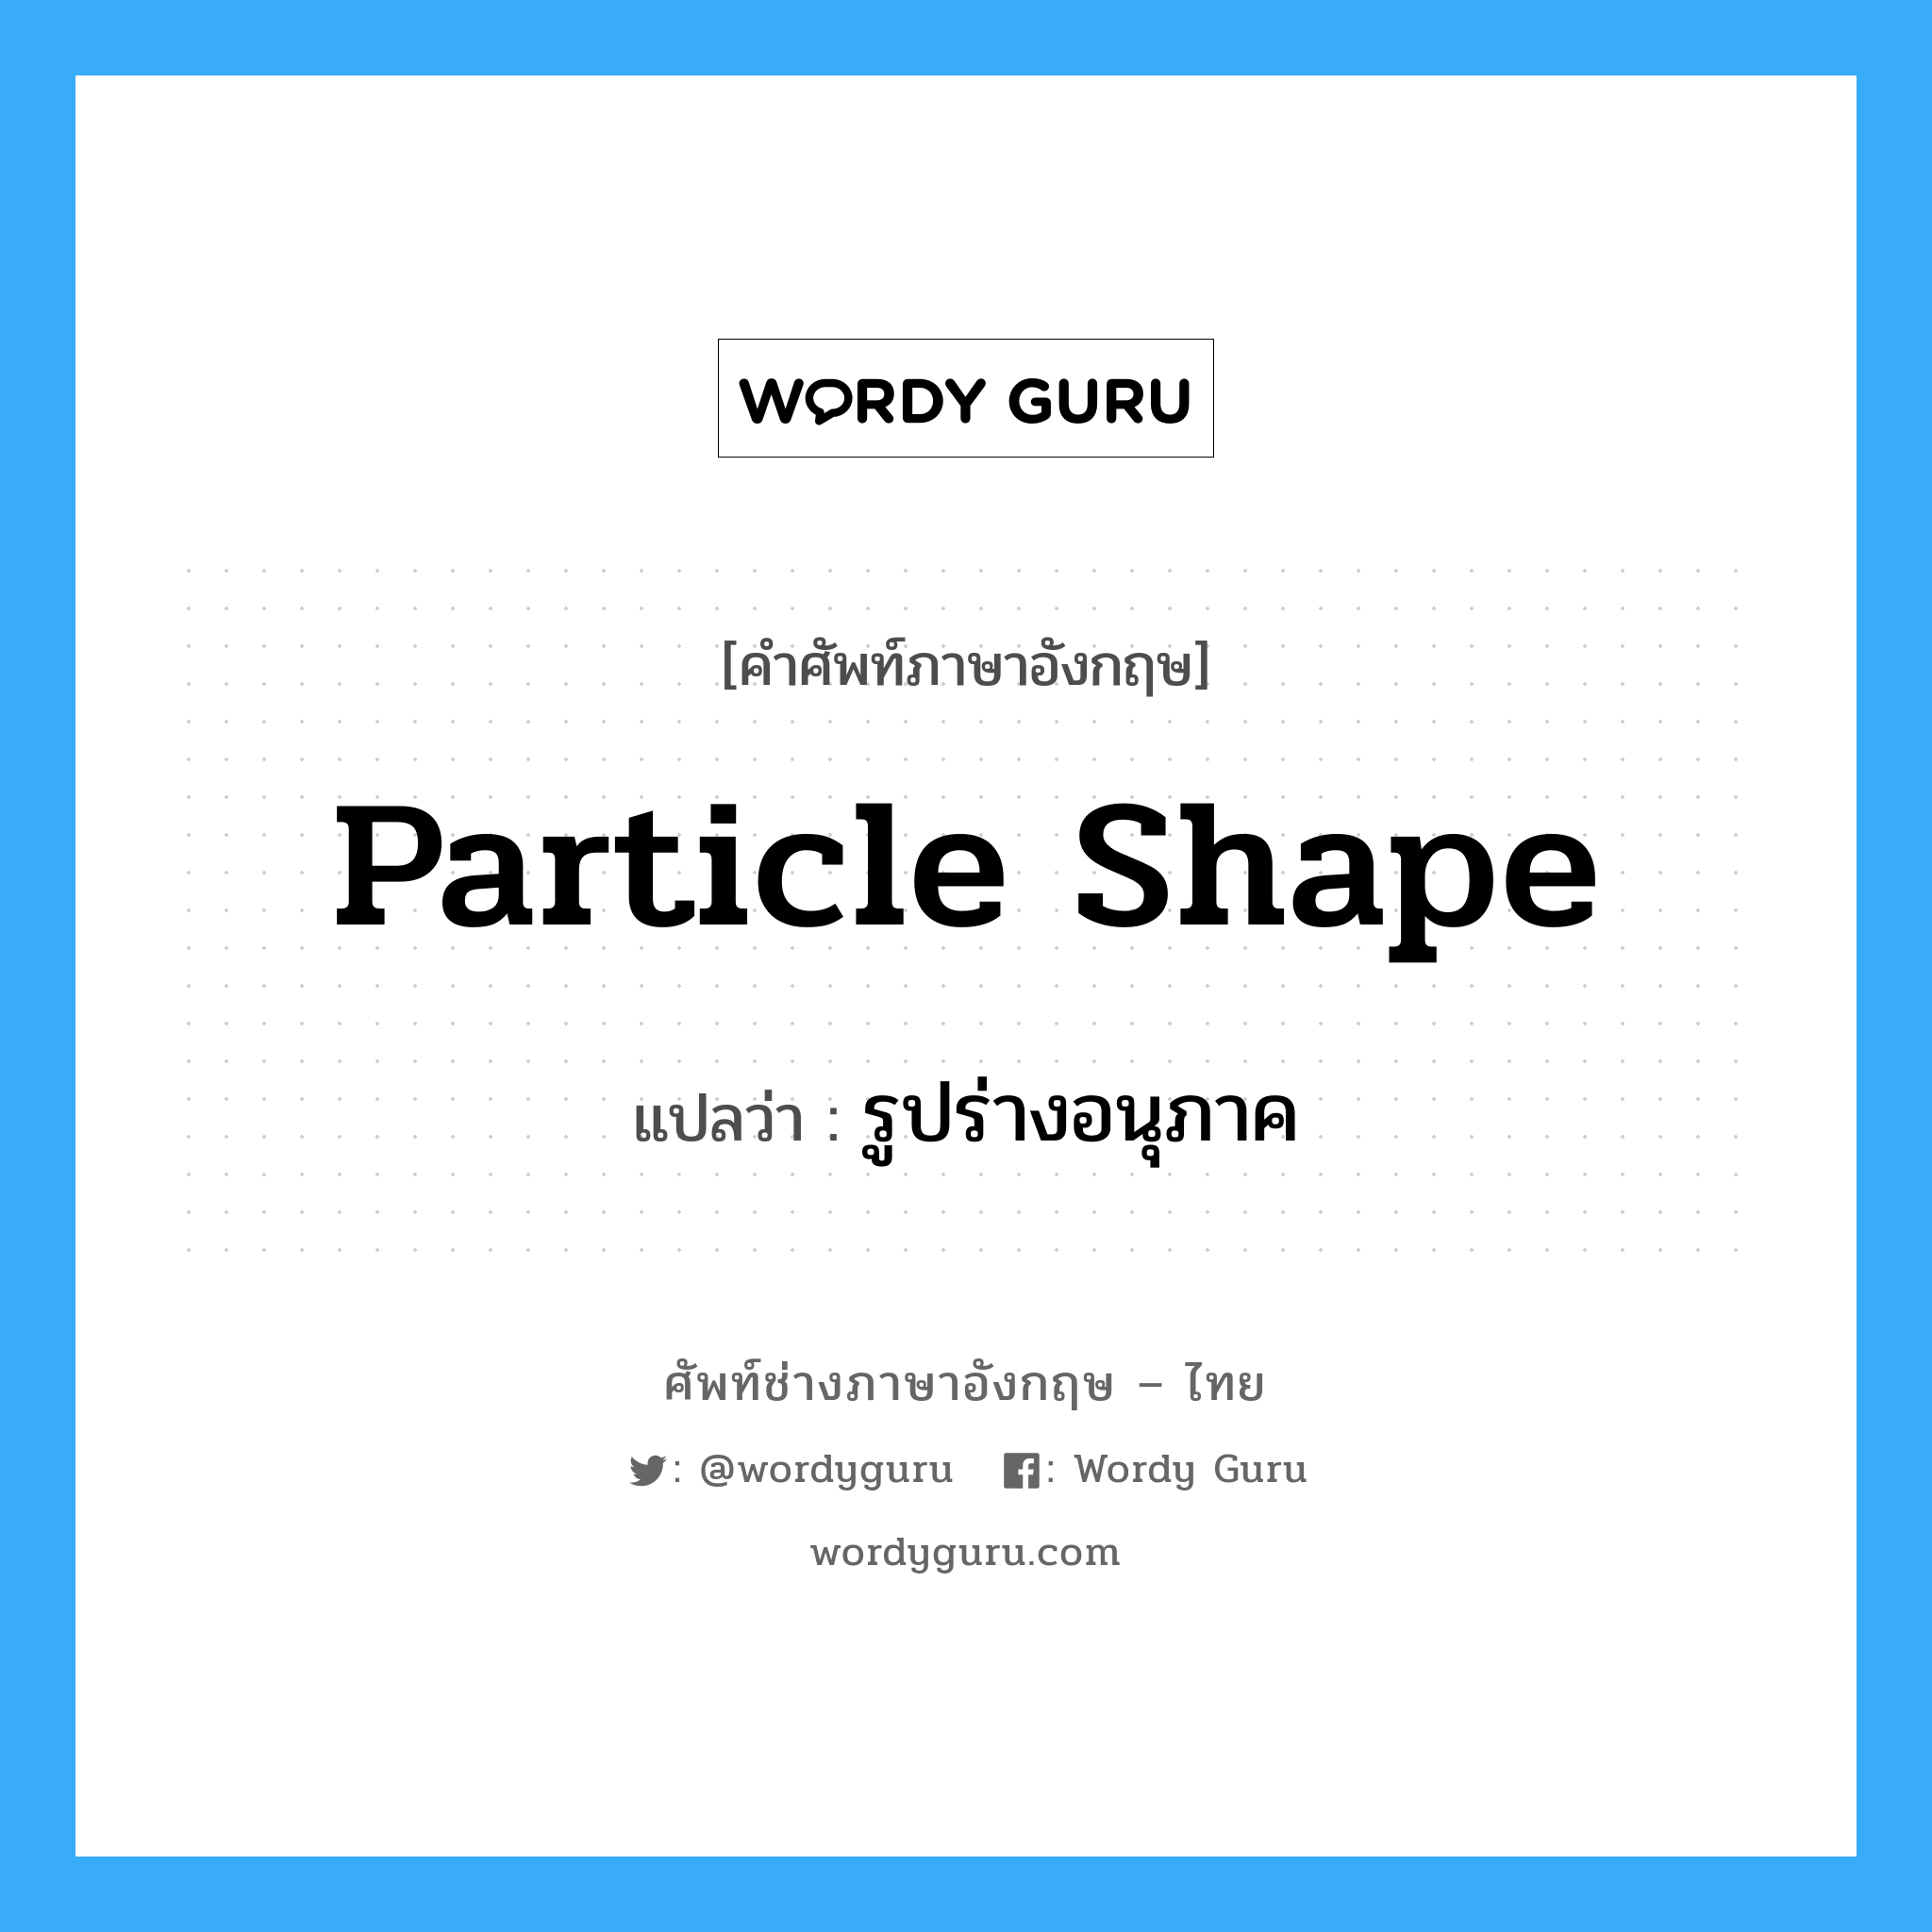 รูปร่างอนุภาค ภาษาอังกฤษ?, คำศัพท์ช่างภาษาอังกฤษ - ไทย รูปร่างอนุภาค คำศัพท์ภาษาอังกฤษ รูปร่างอนุภาค แปลว่า particle shape